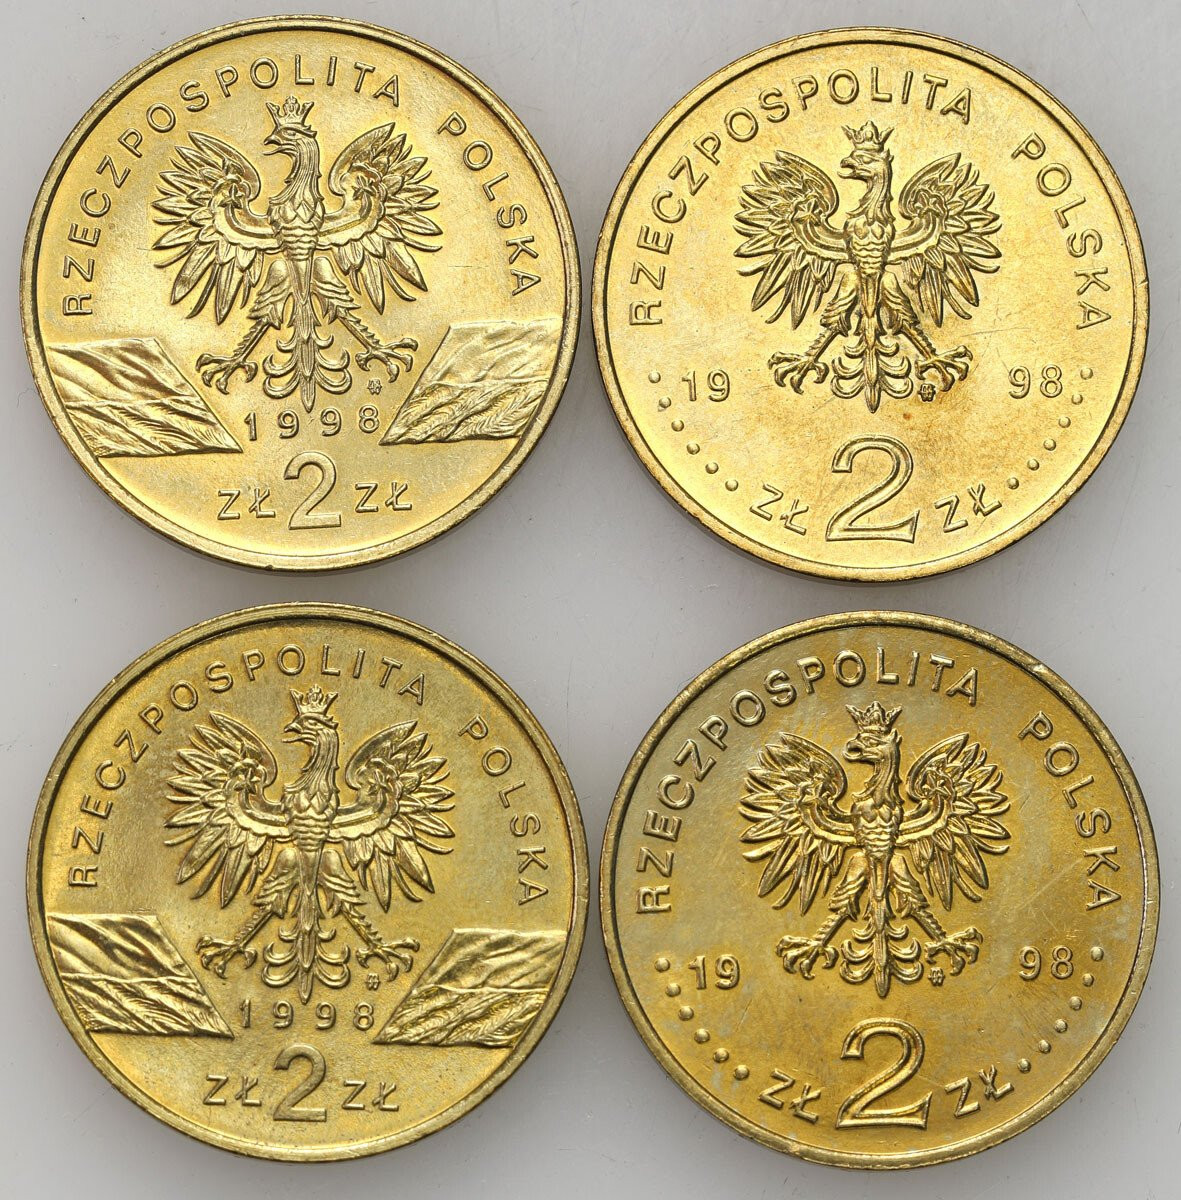 III RP. 2 złote 1998 Ropucha Paskówka, XVIII Zimowe Igrzyska Olimpijskie - Nagano 1998, zestaw 4 sztuk 